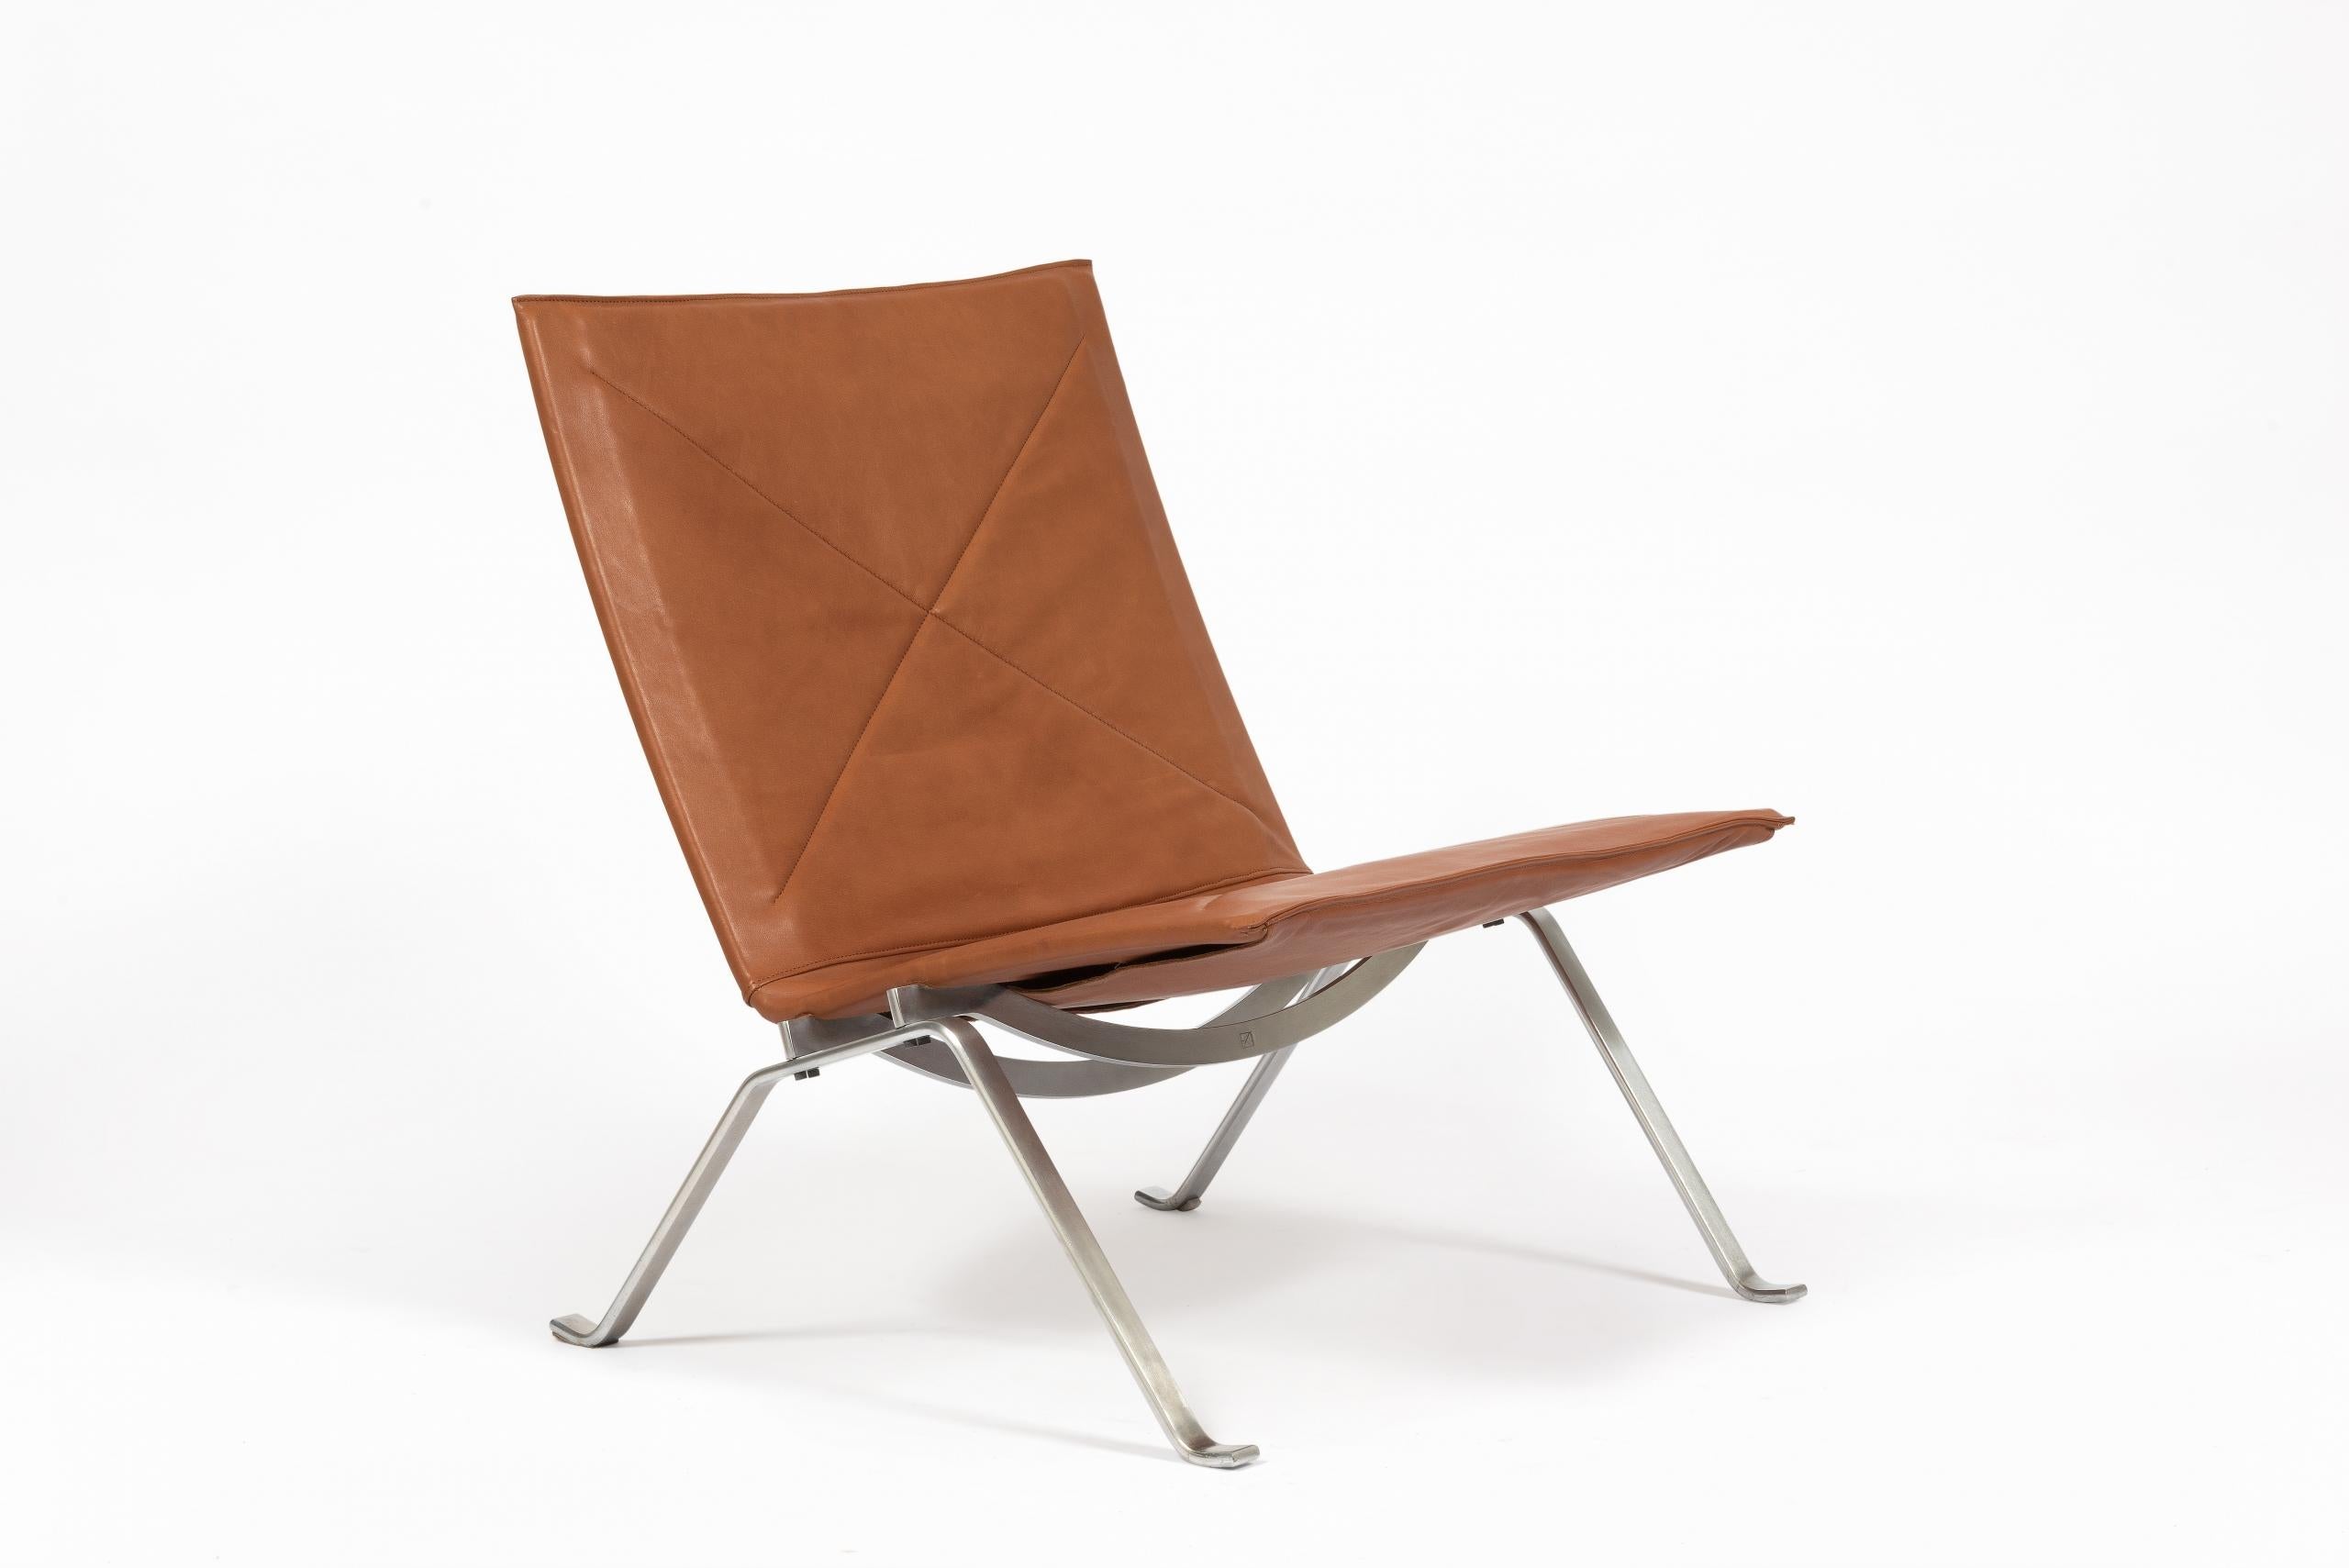 Paire de fauteuils modèle “PK 22” de design danois de 1955, par Poul Kjærholm pour E. Kold Christensen.

Structure en acier brossé avec assise et dossier en cuir marron.